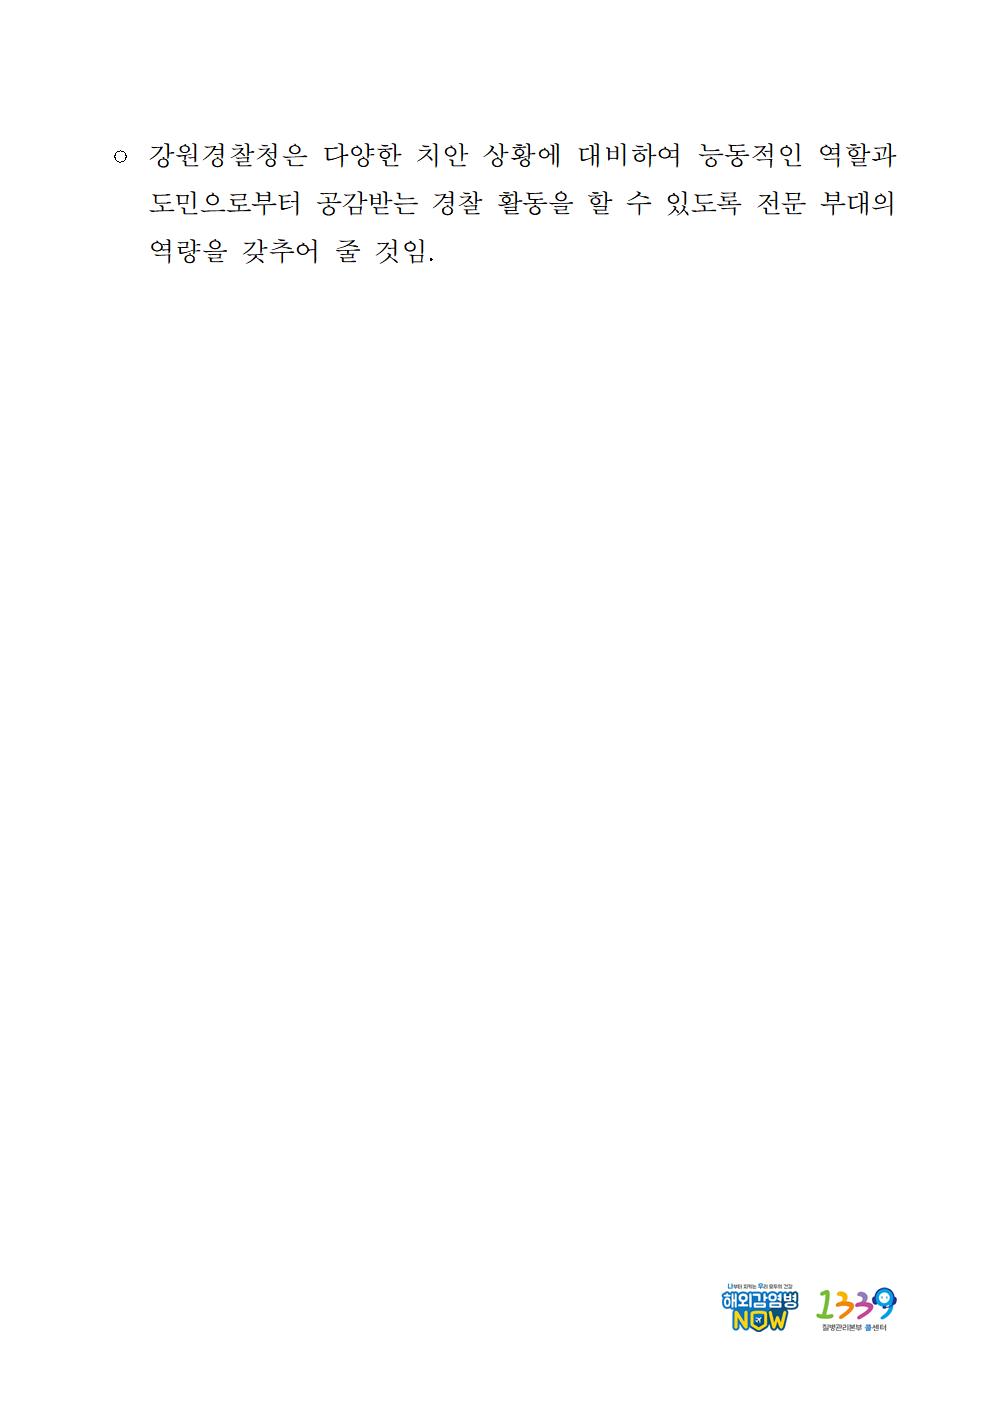  강원경찰 2기동대 창설 보도자료-강원경찰 2기동대 창설 보도자료002